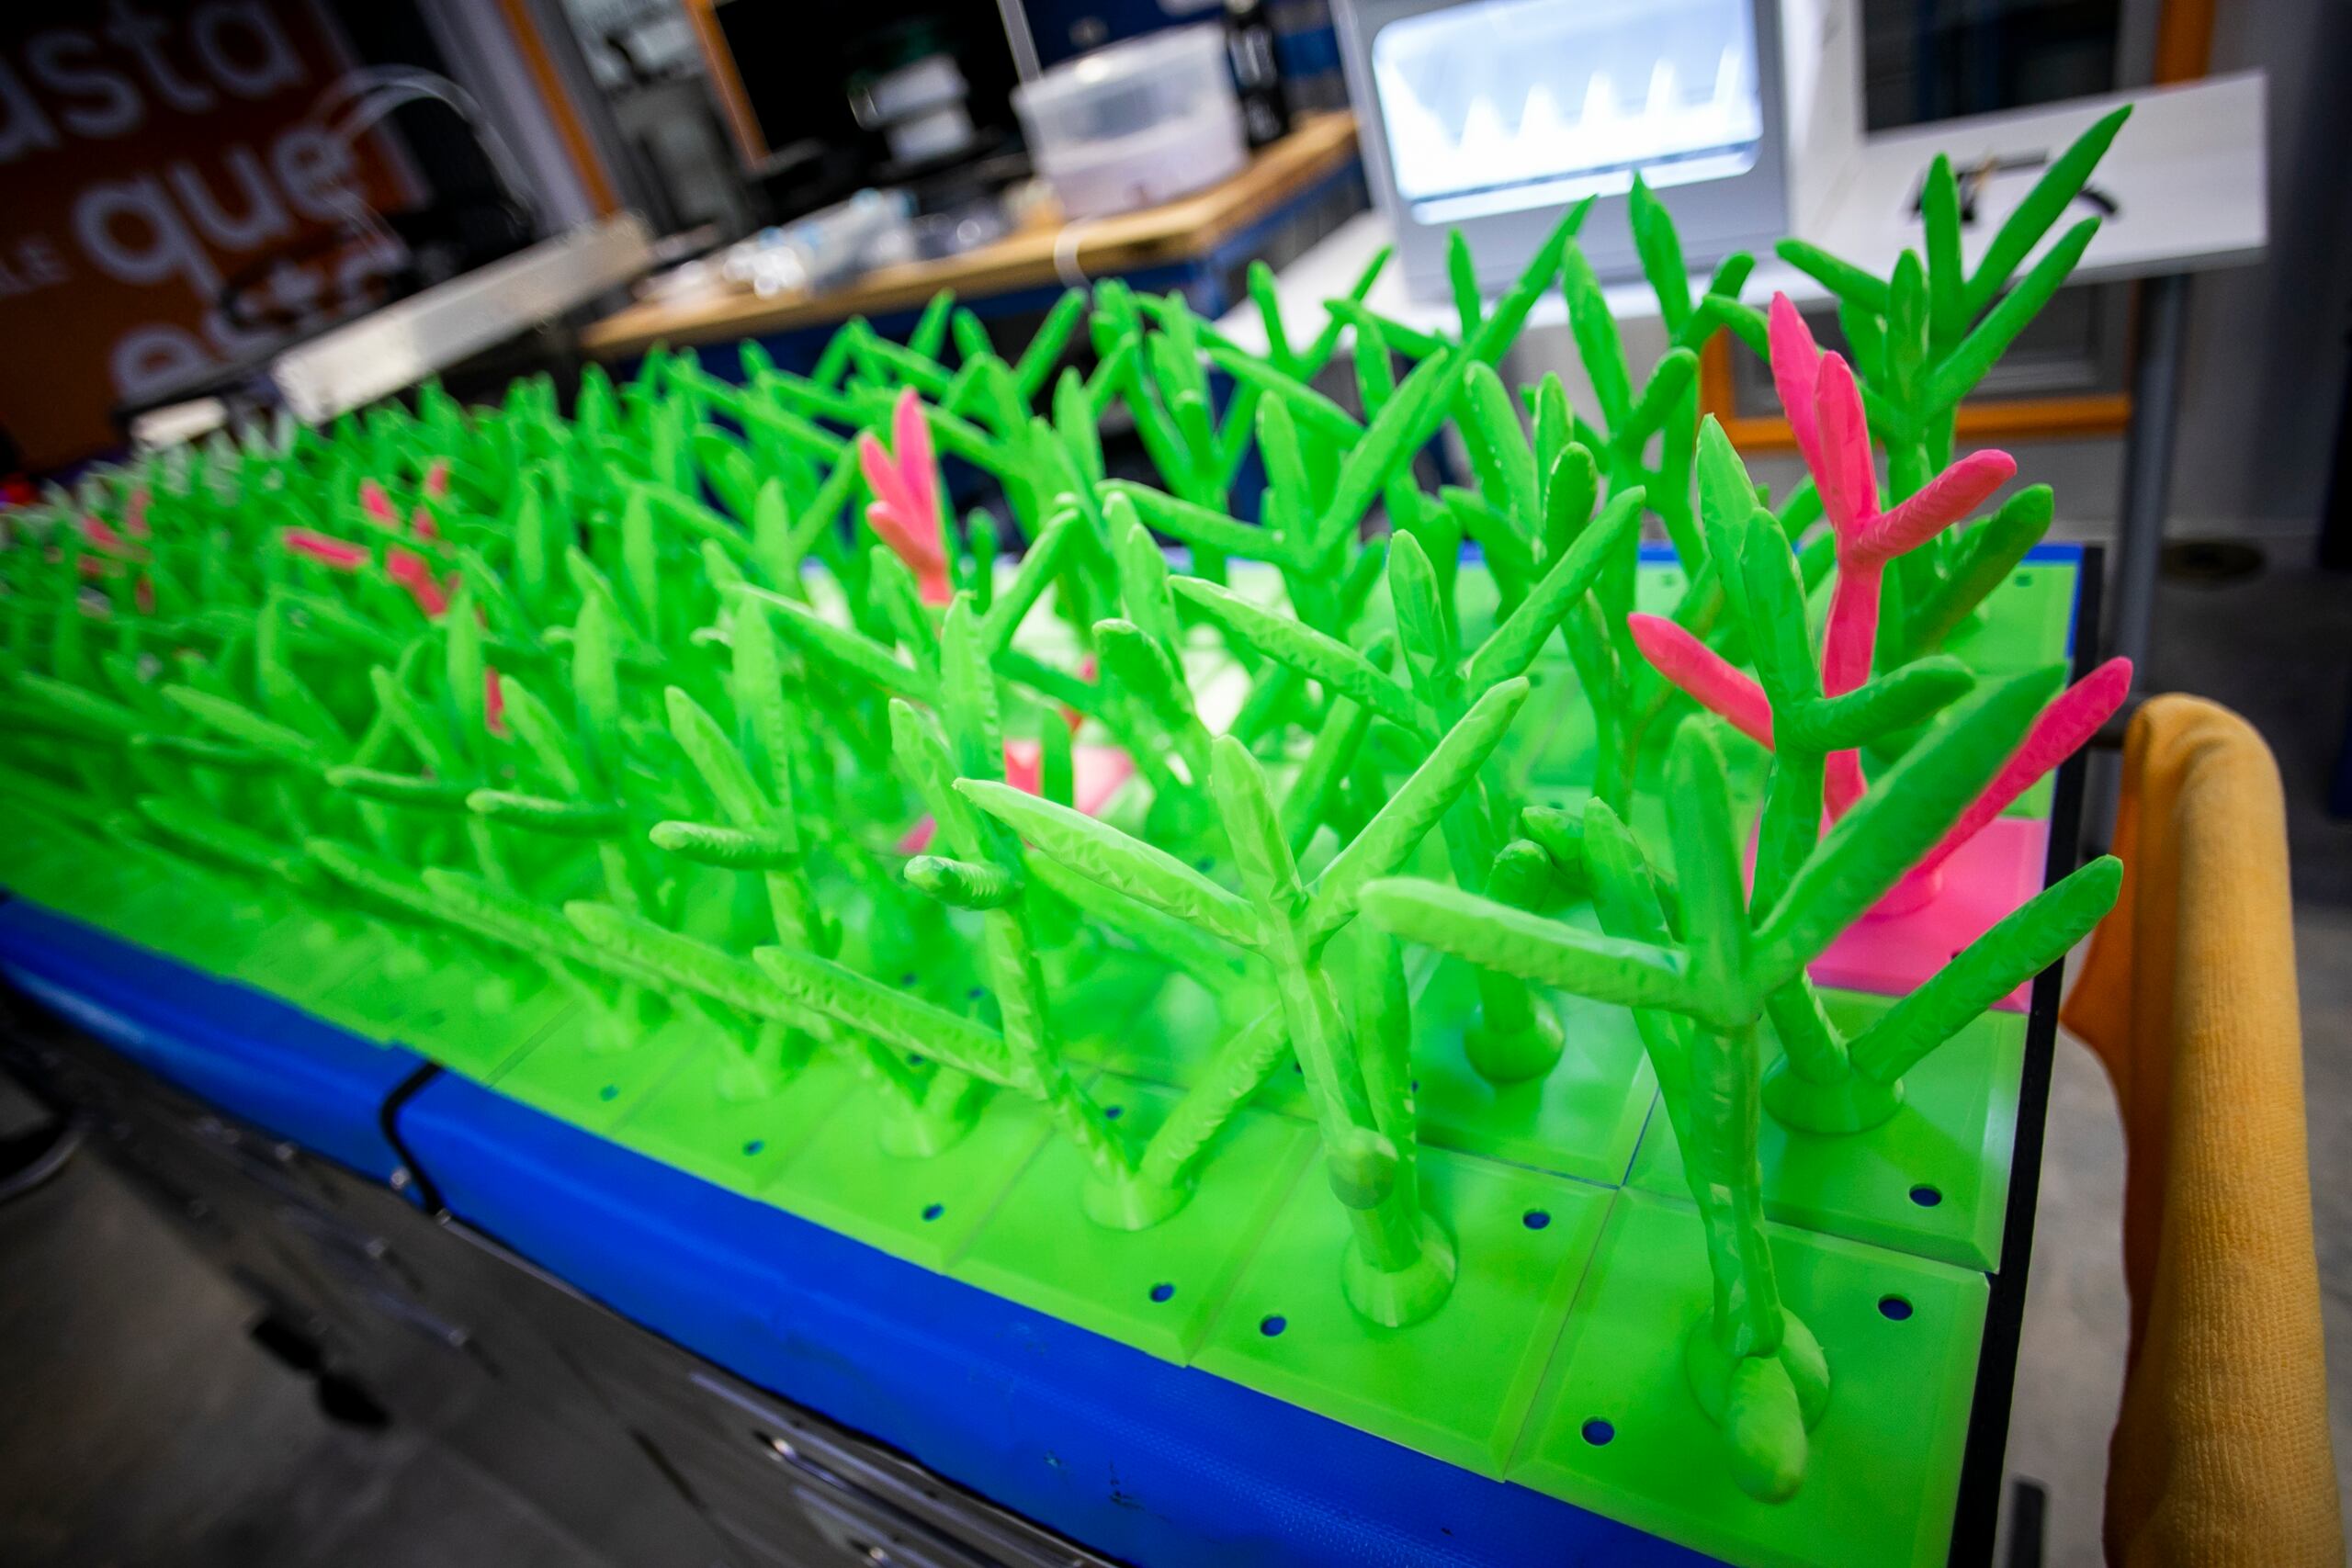 Engine-4 está manejando un proyecto clave en el que usa la tecnología como herramienta para ayudar al medio ambiente. Se trata de Reef3D, un esfuerzo de creación de corales con impresoras 3D para insertarlos en el fondo marino, específicamente en la isla municipio de Culebra. 